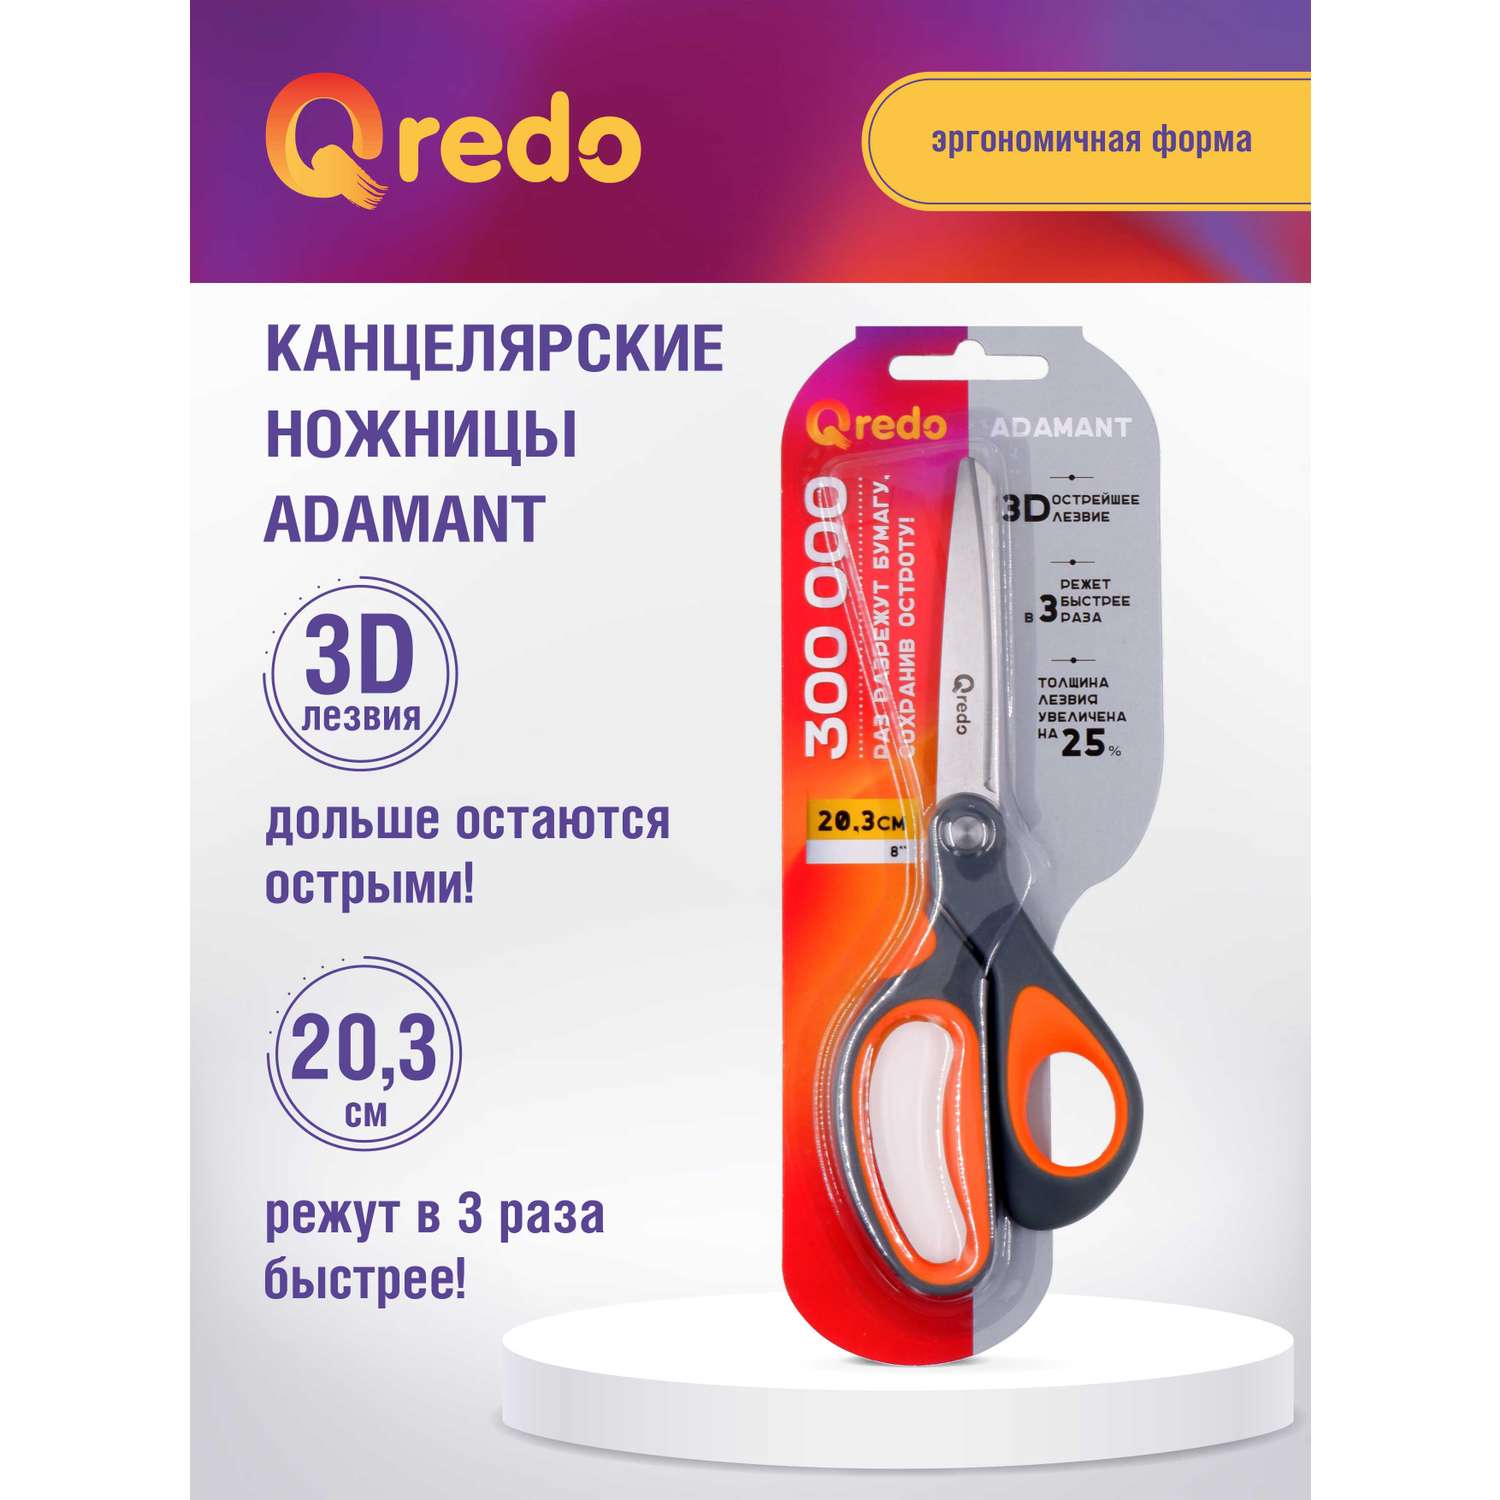 Ножницы Qredo 20 см ADAMANT 3D лезвие эргономичные ручки серый оранжевый пластик прорезиненные - фото 1